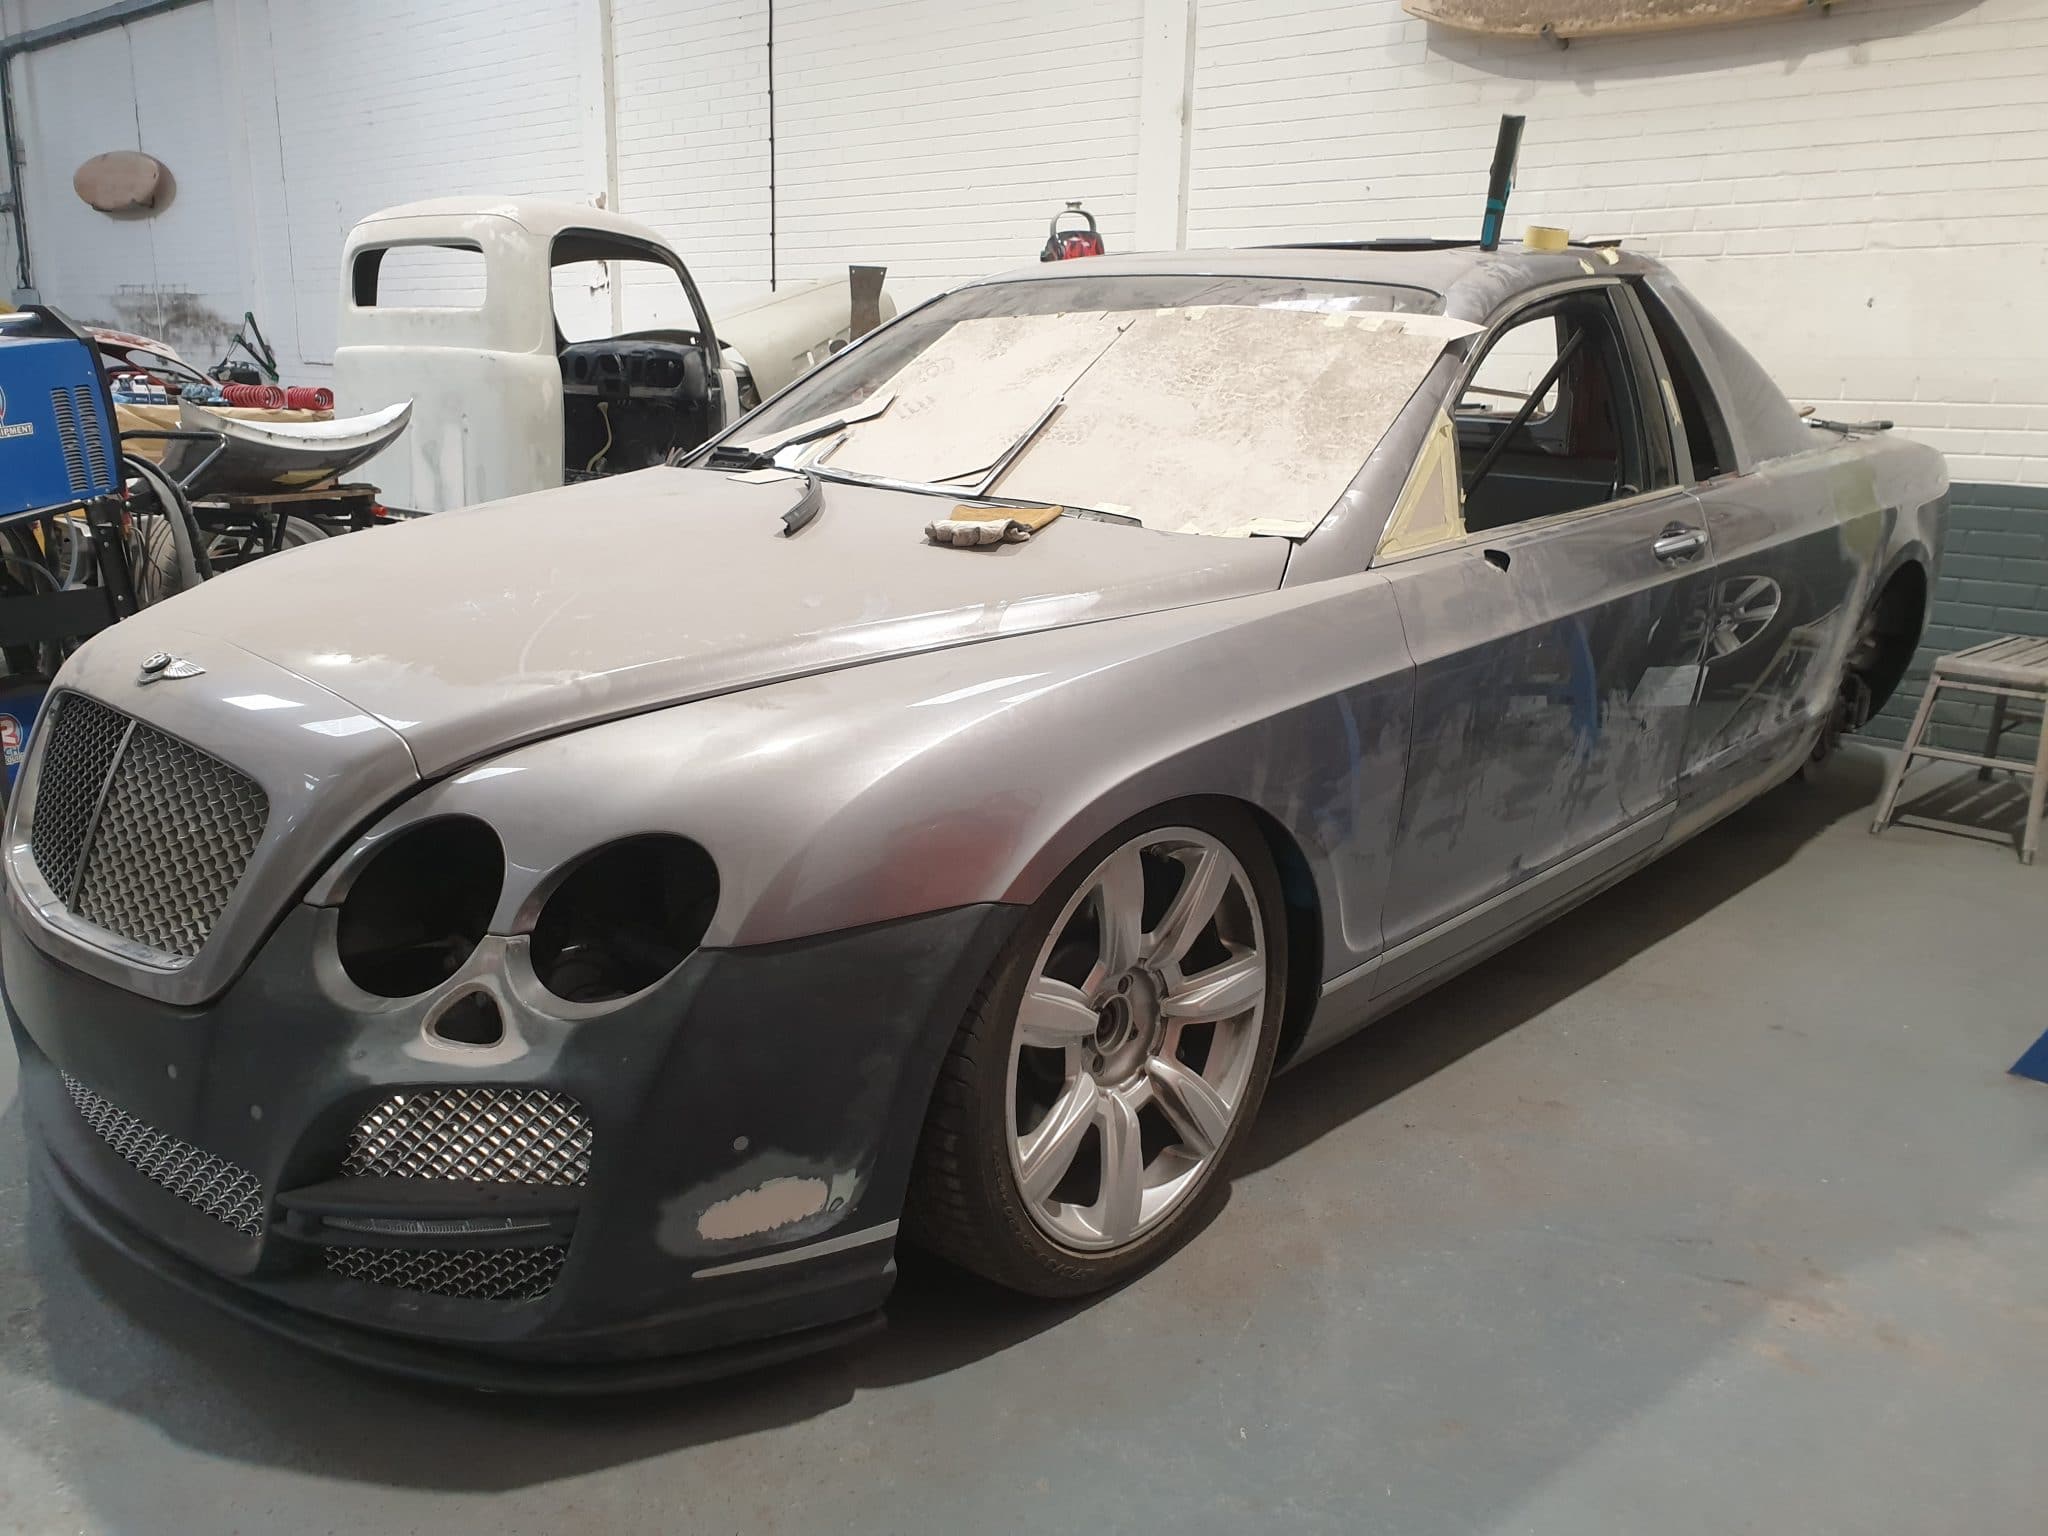 Bentley customisation in progress